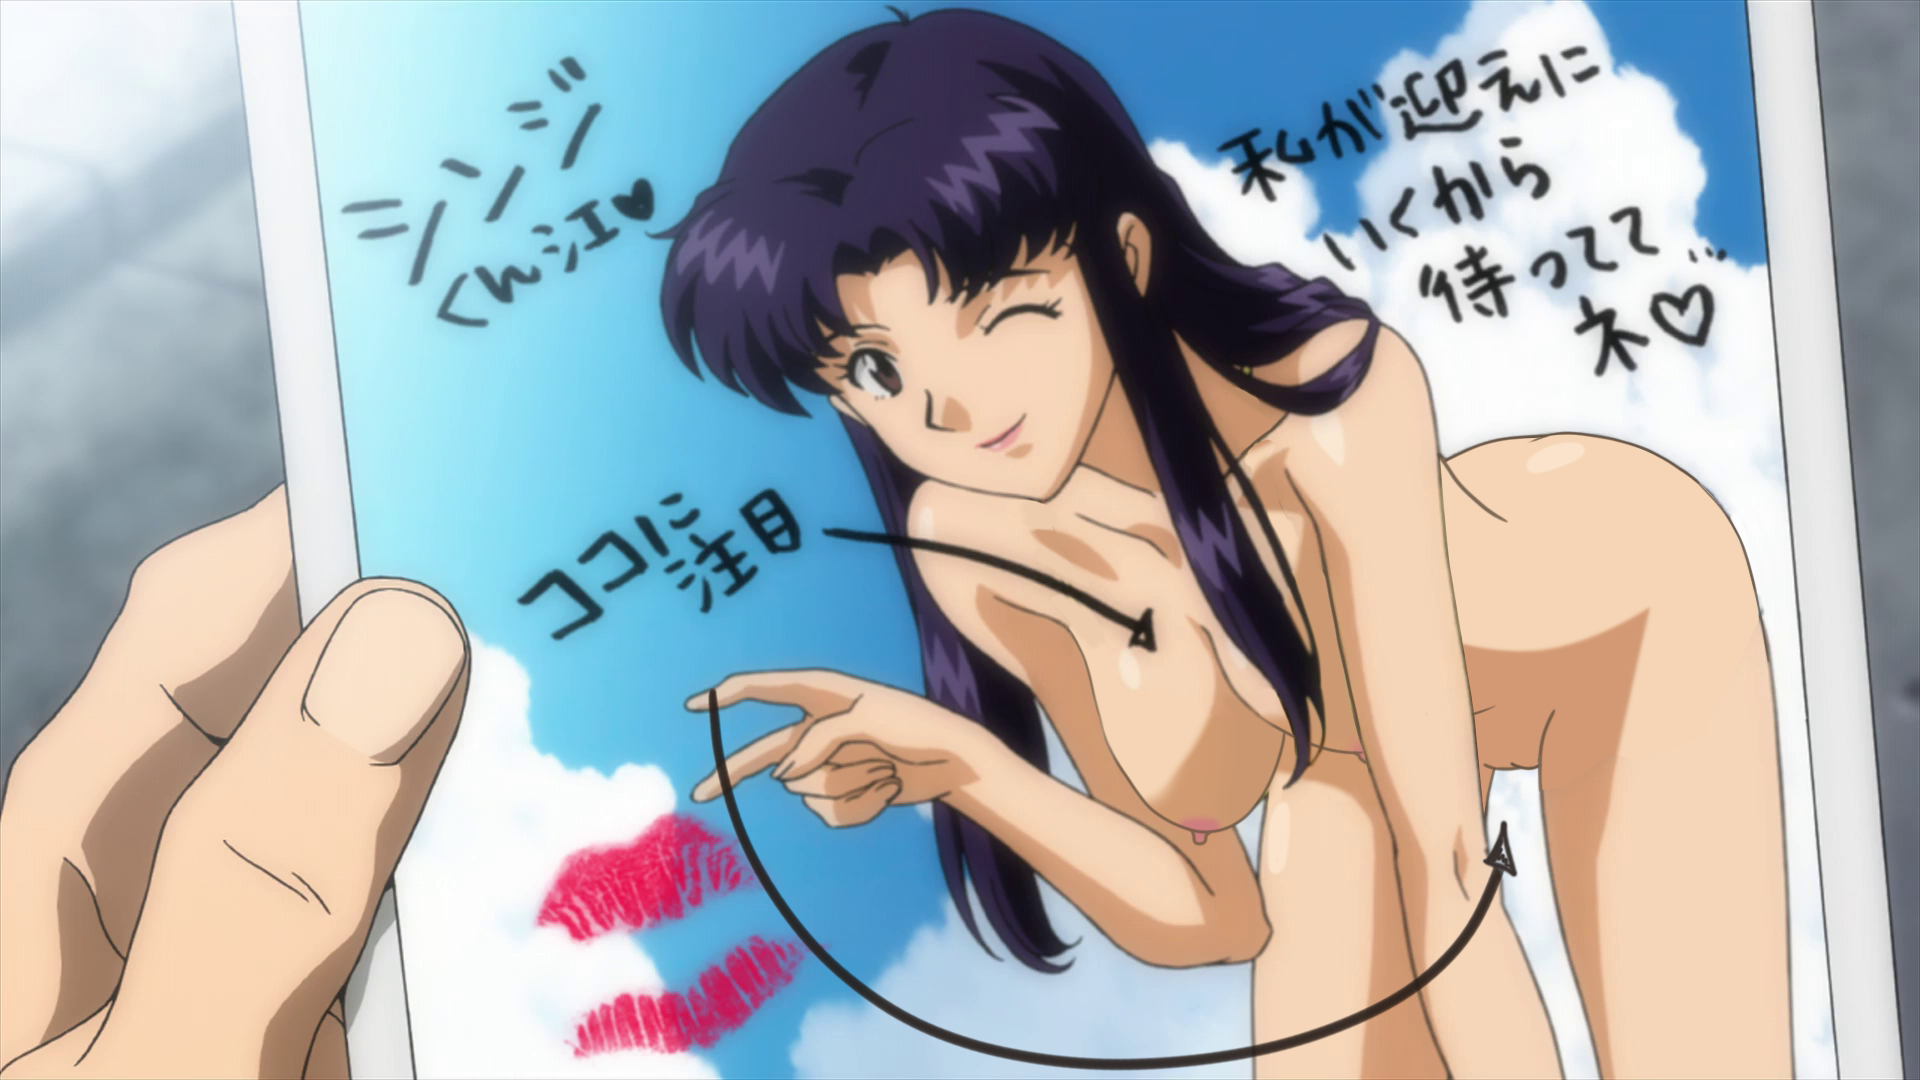 Misato katsuragi nude